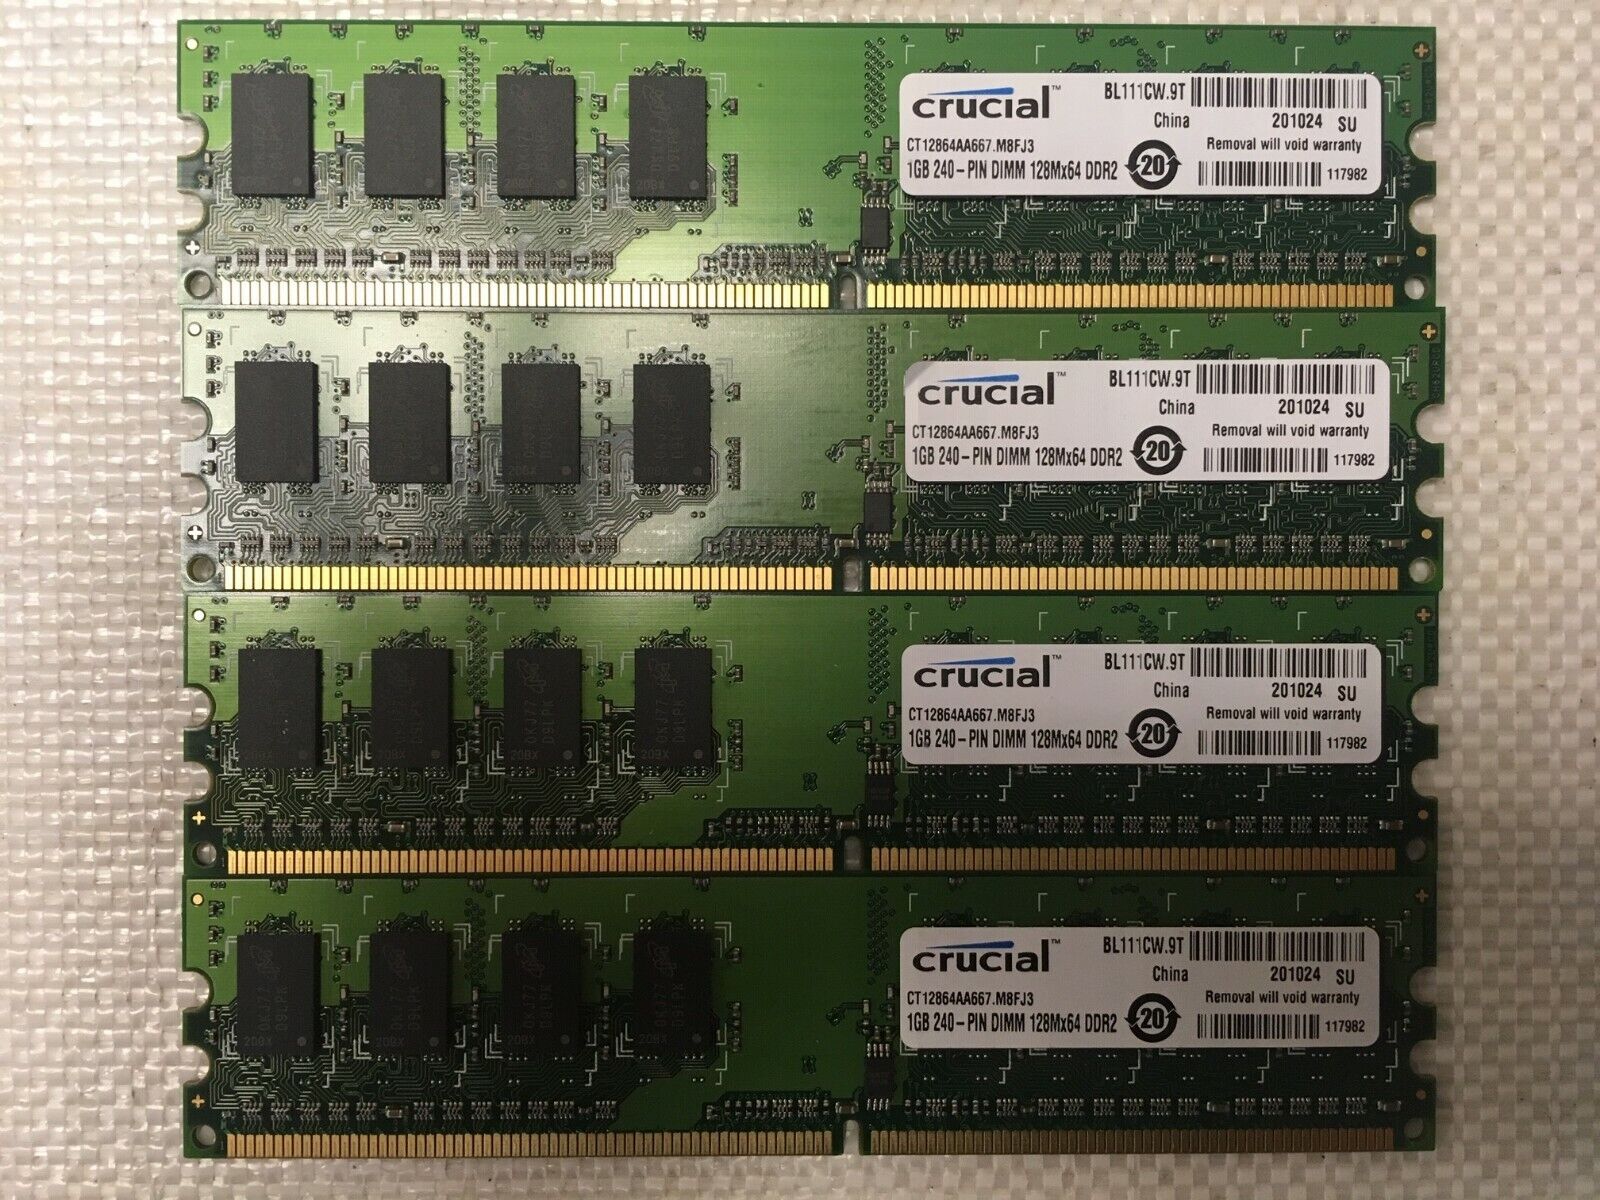 4GB Crucial 4X1GB CT12864AA667.M8FJ3 DDR2 128MX64 MEMORY RAM 201024